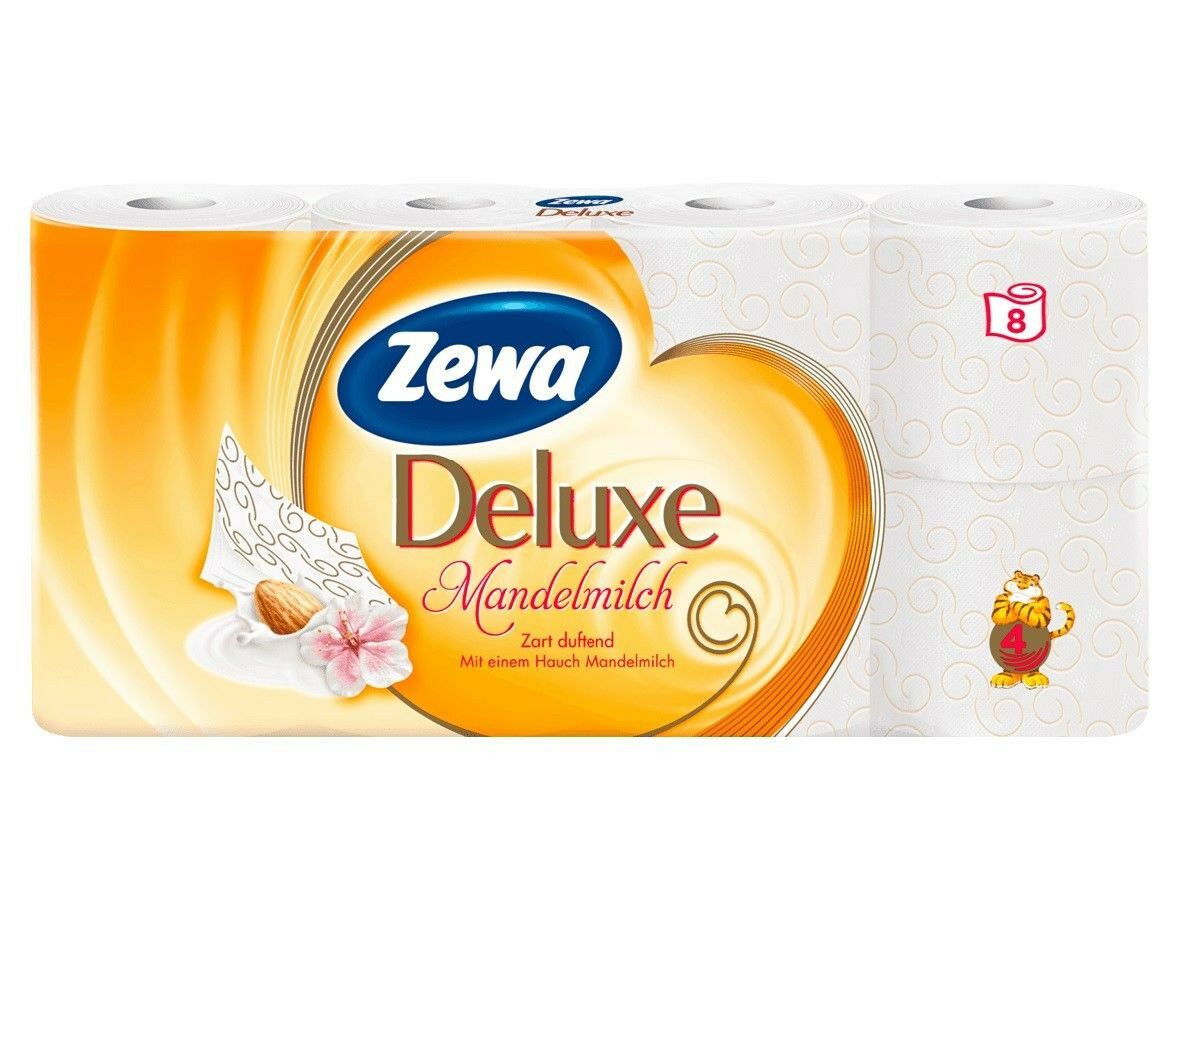 aga>Toilet Paper (8 rolls) Zewa